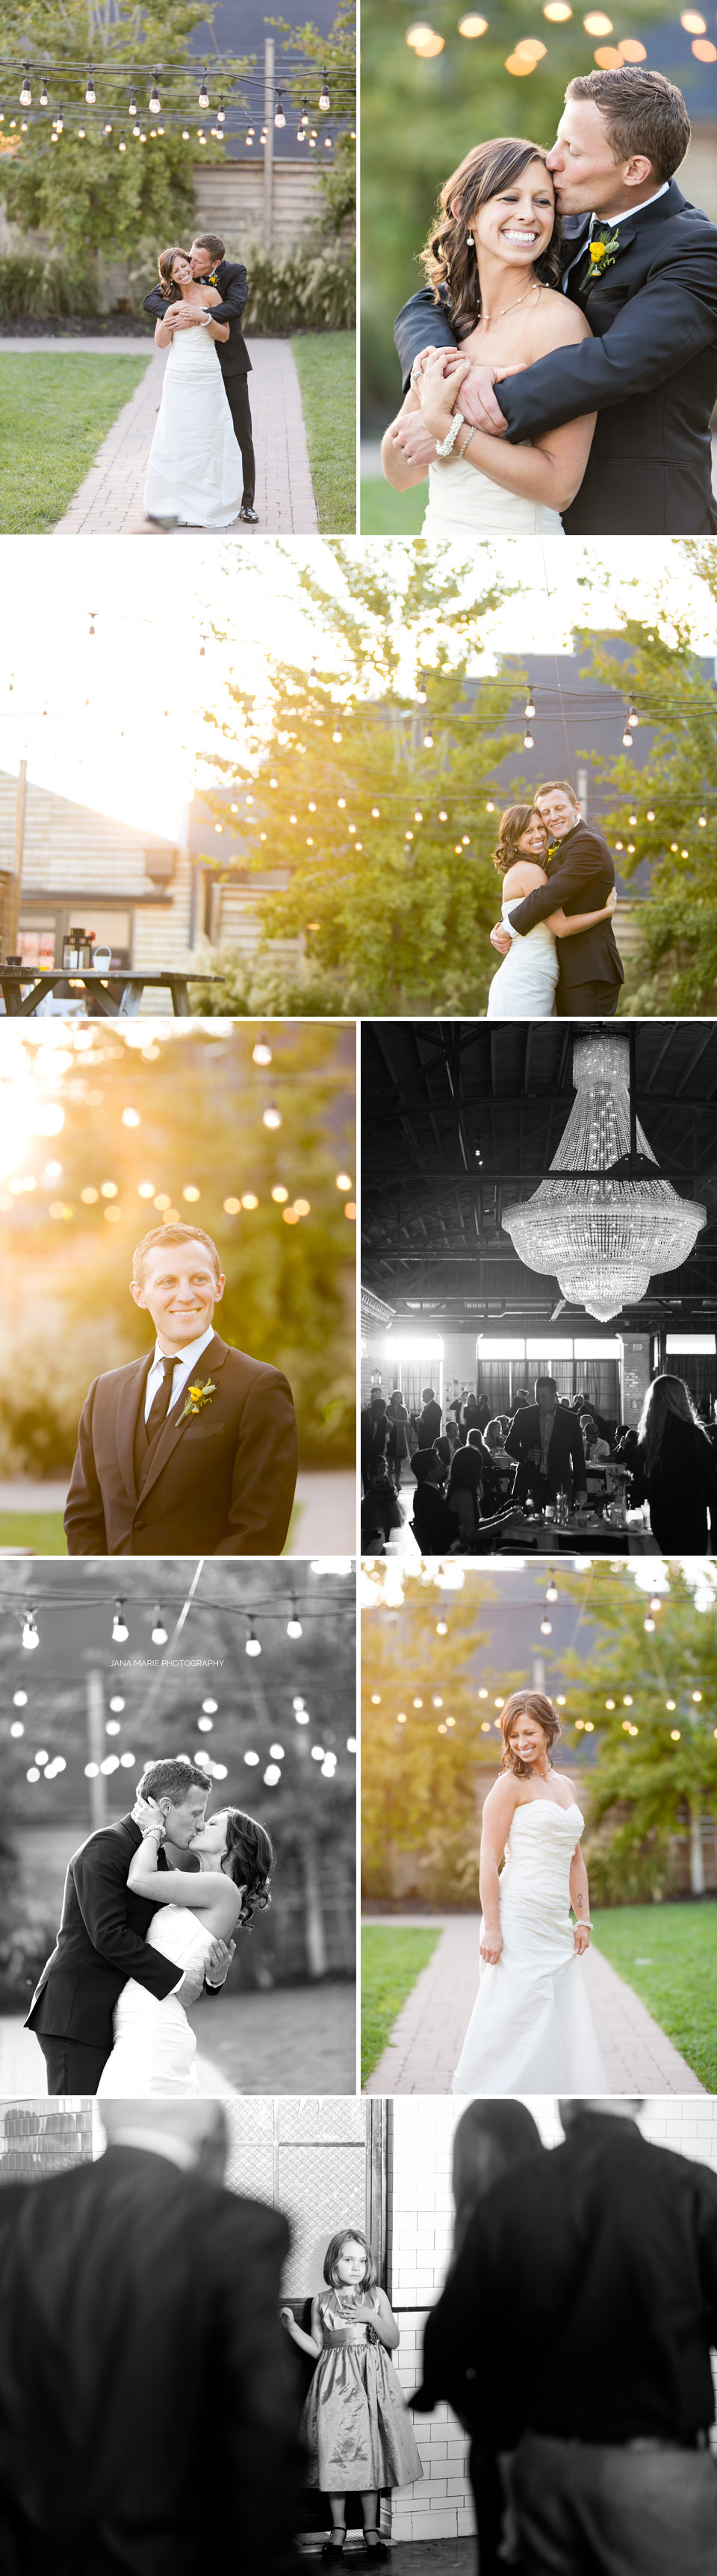 The Guild KC, KC photographer, KC weddings, Kansas City wedding photographer, BEST Kansas City photographer, Fall wedding, Sunflower bouquet, KCMO, #kcloves, #kansascityloves